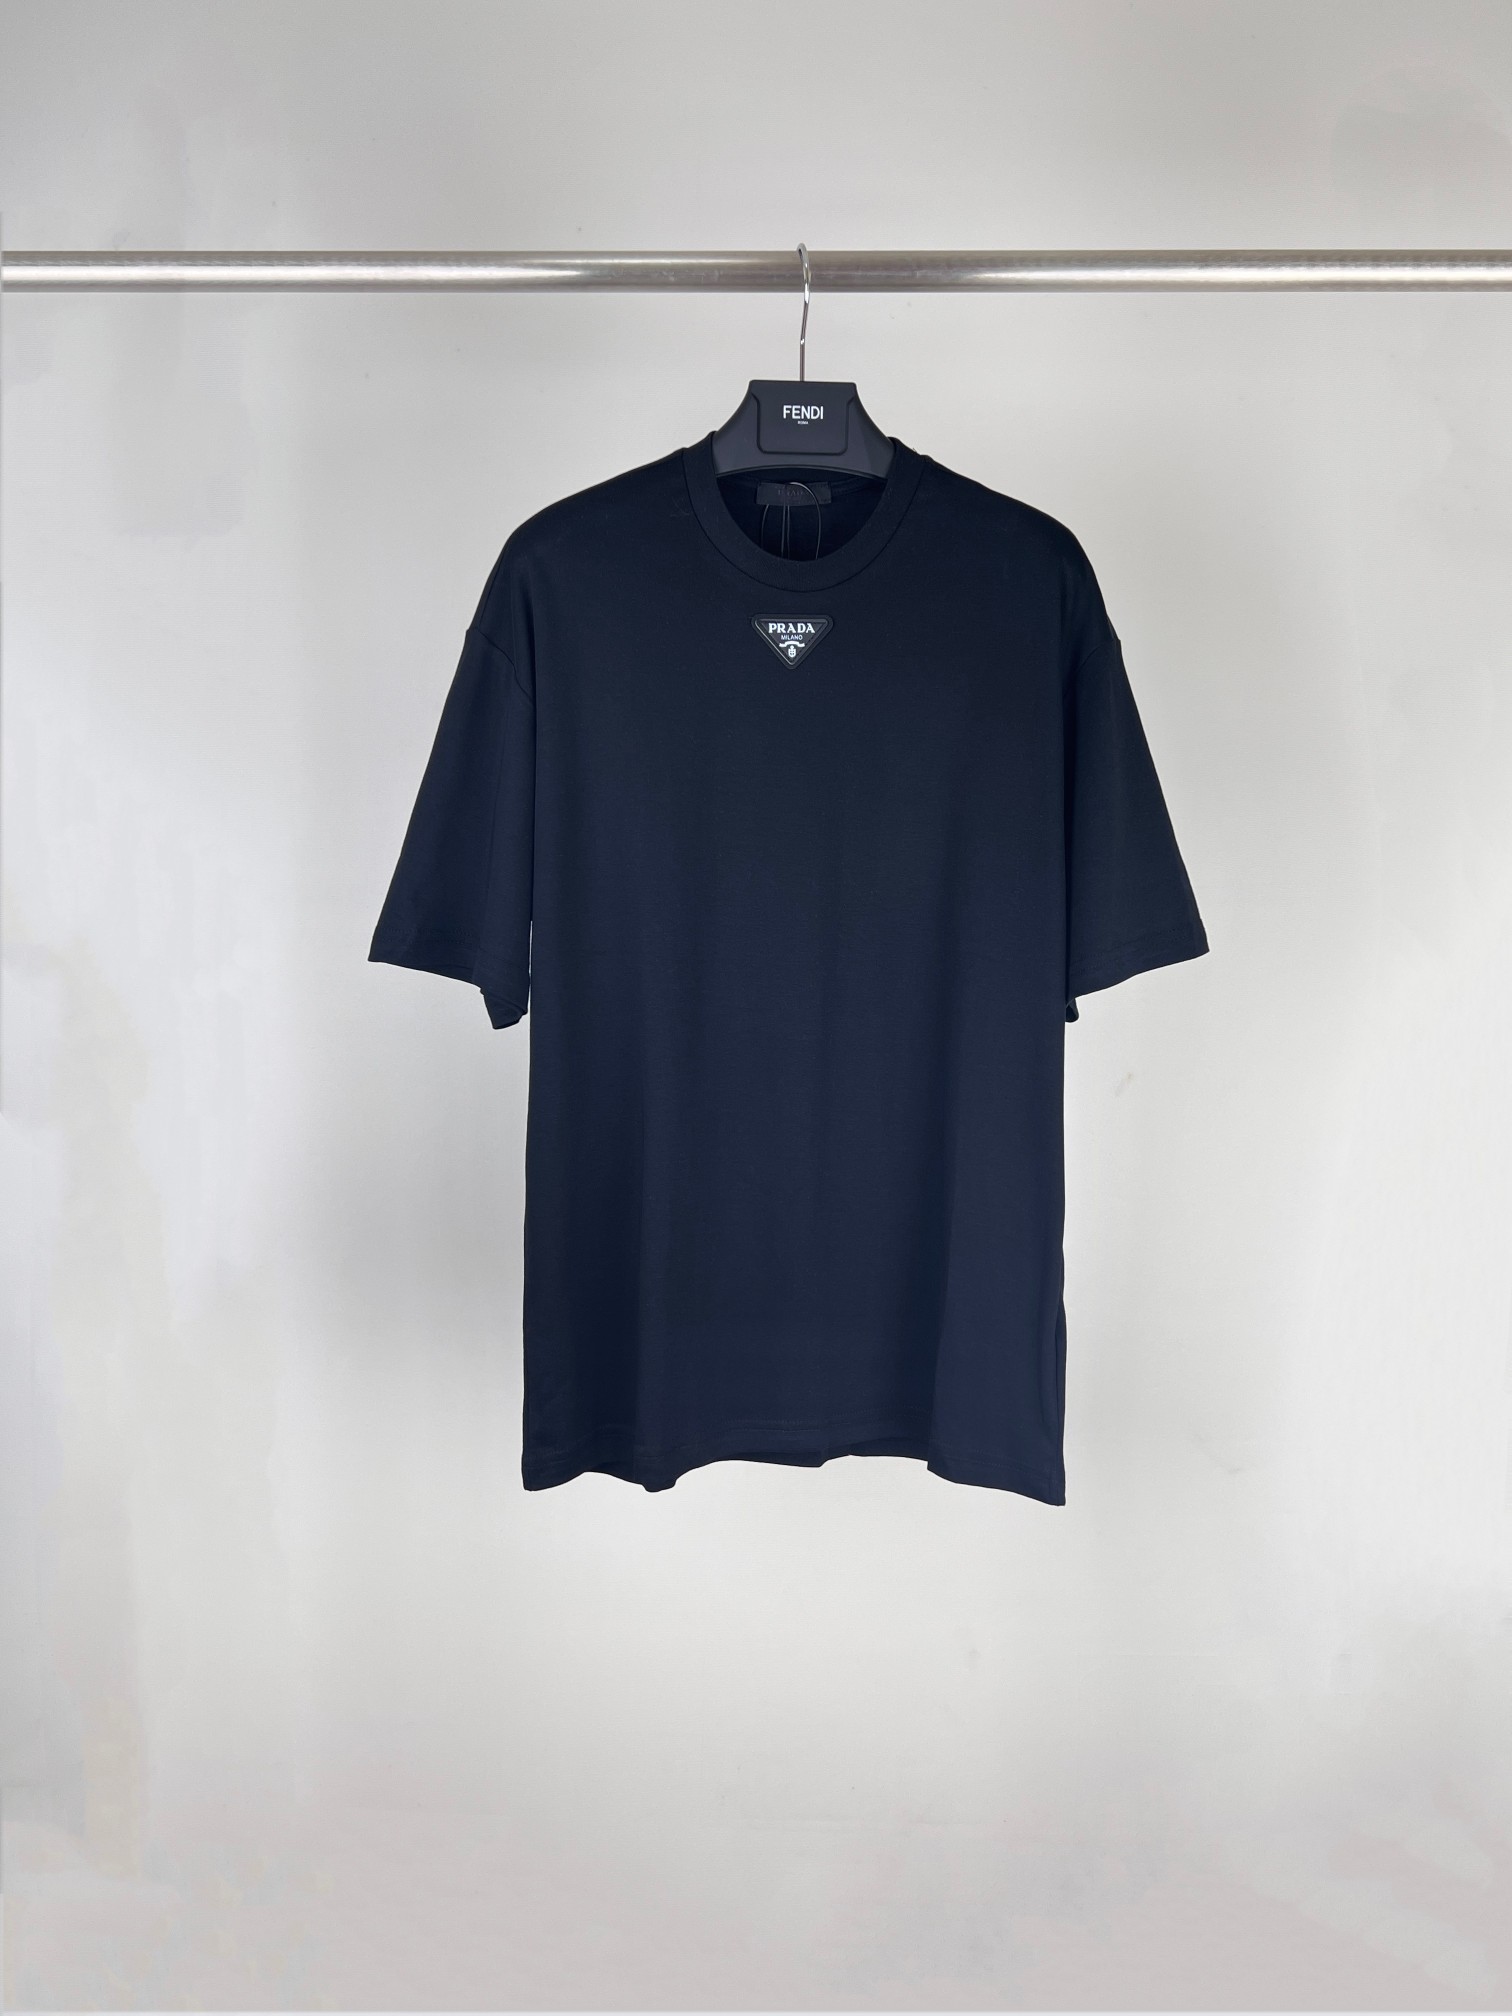 Prada Clothing T-Shirt Short Sleeve